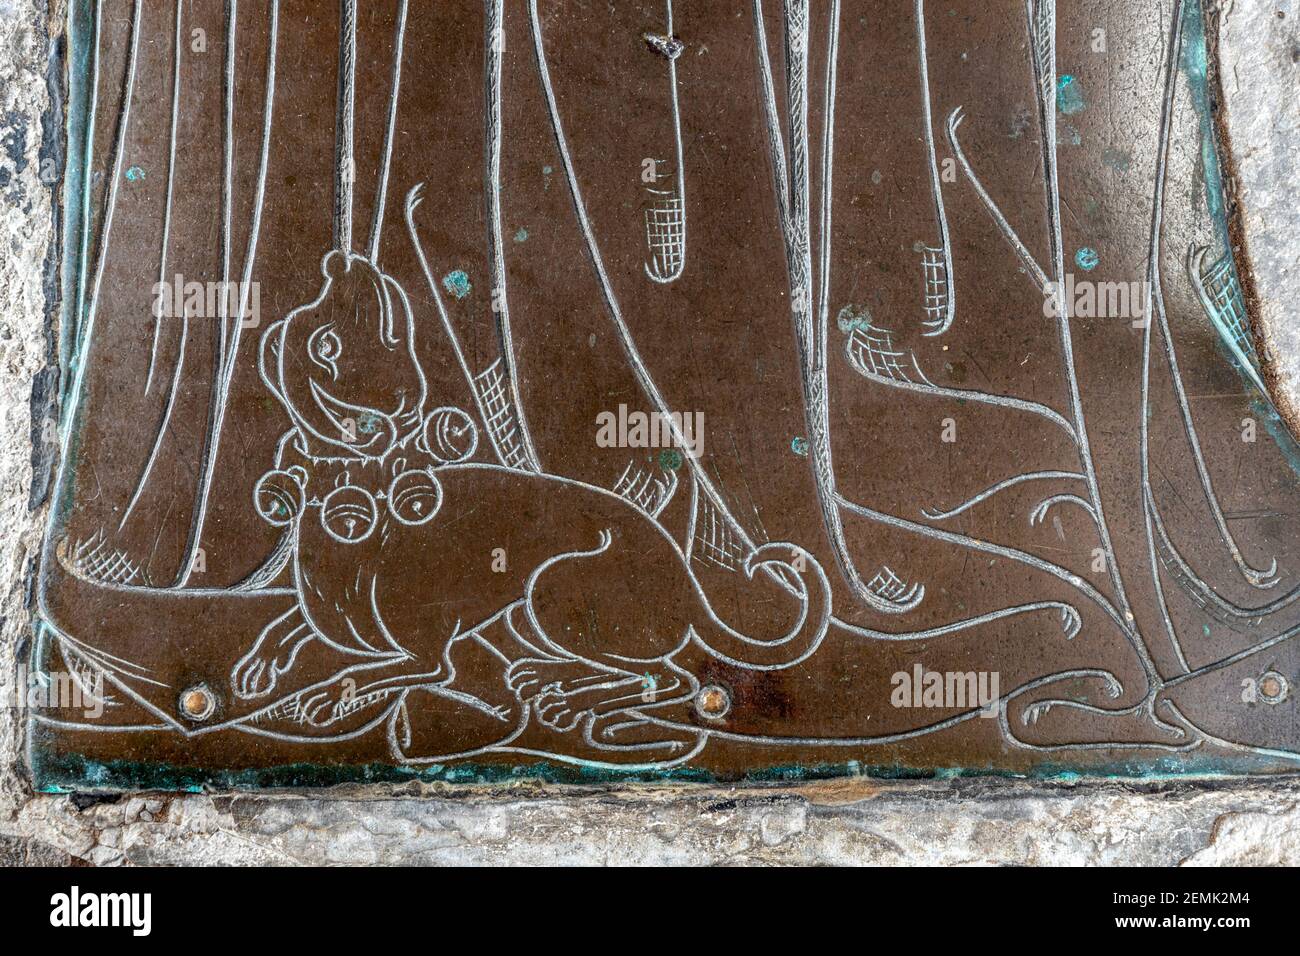 Détail d'un laiton commémoratif d'un marchand de laine inconnu (c..1400) chien de Lap aux pieds de sa femme dans l'église de la ville de Cotswold de Northleach, Glos. Banque D'Images